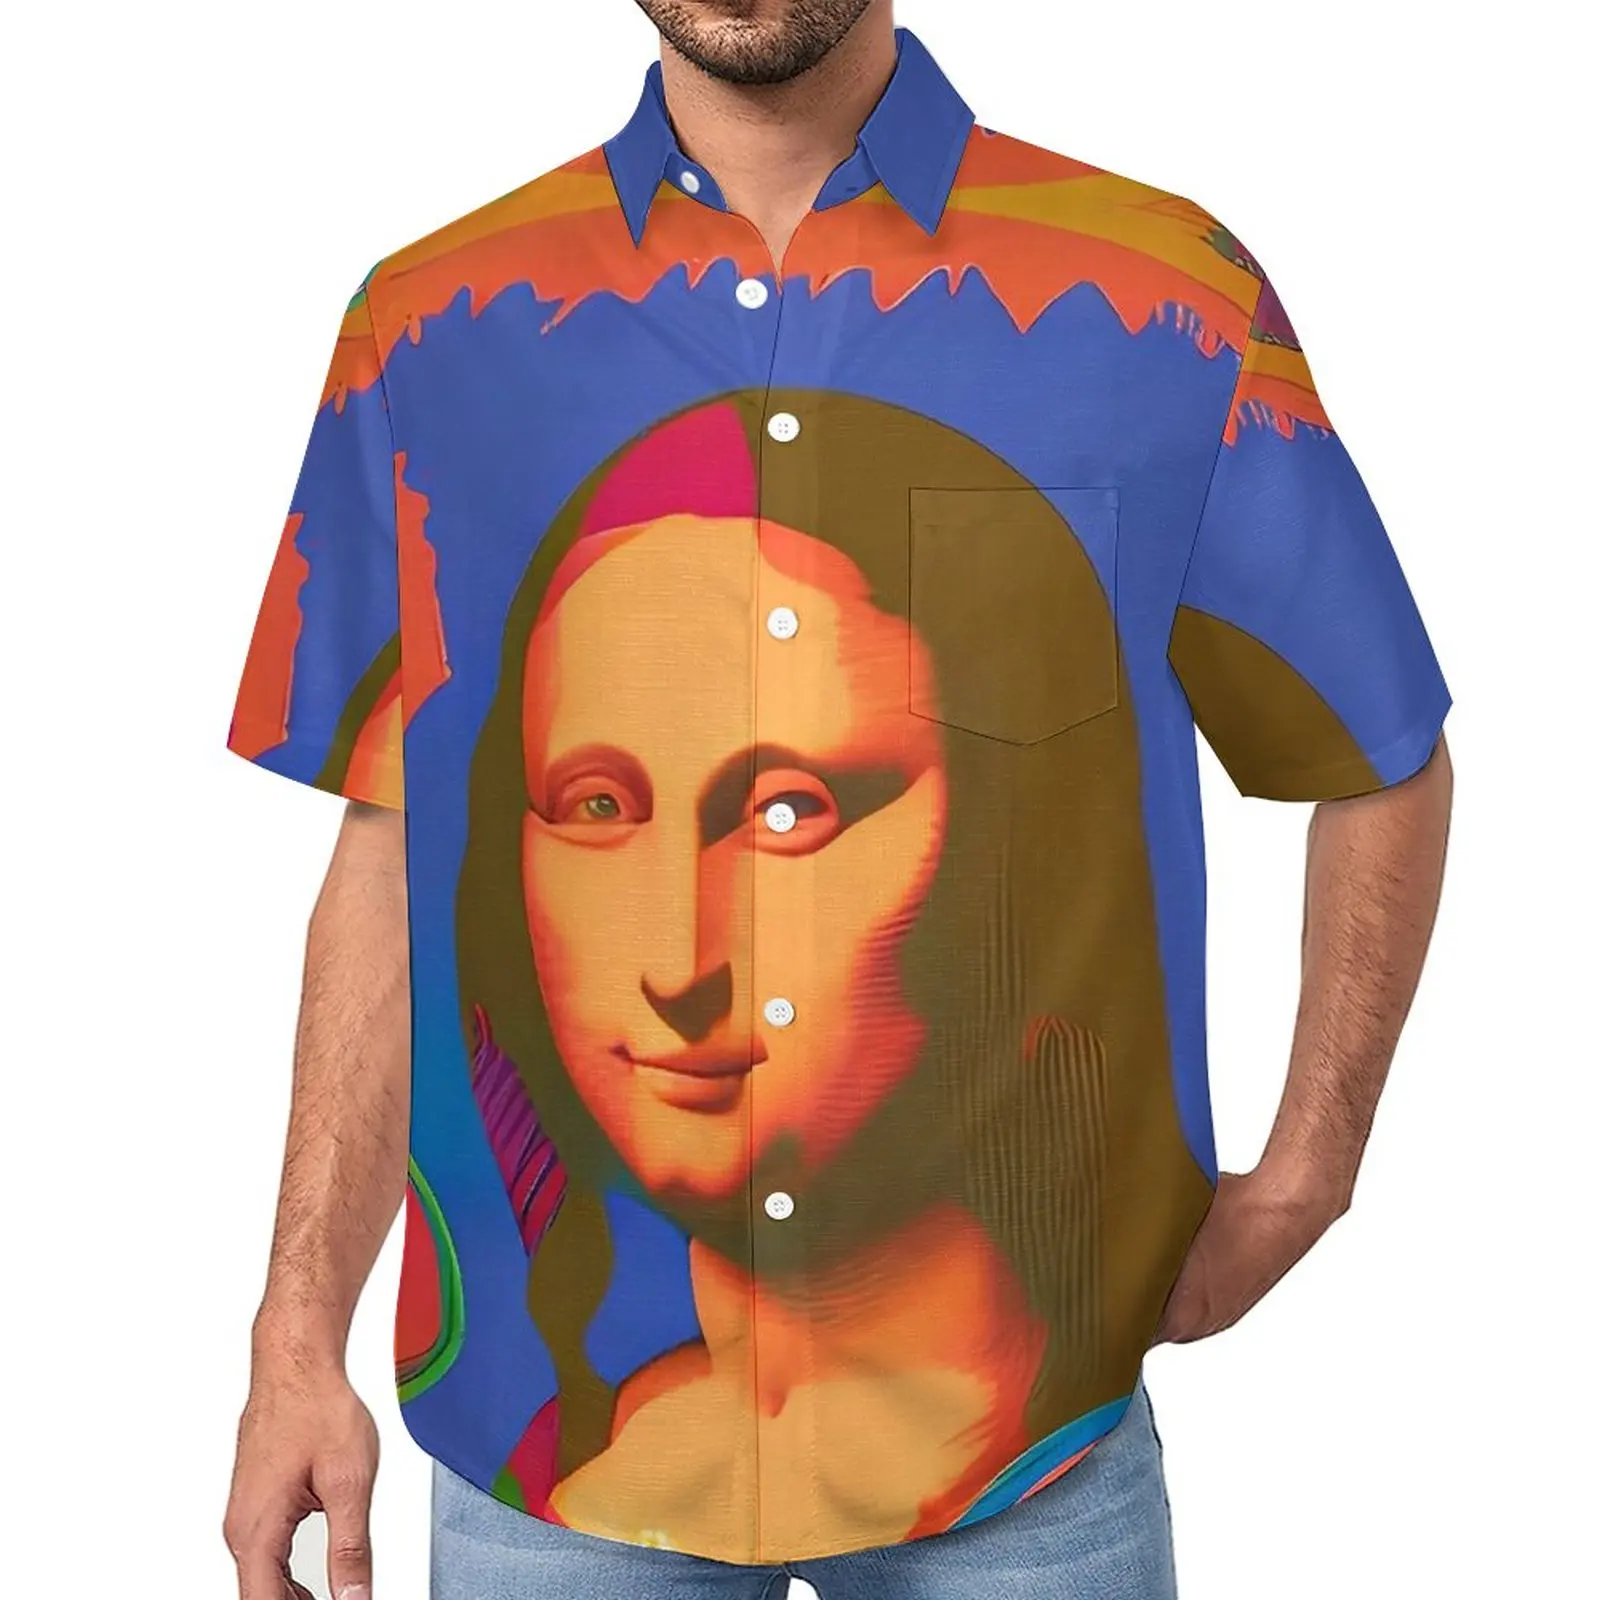 

Мужские блузки Mona Lisa, цветные повседневные рубашки в гавайском стиле с коротким рукавом, стильная пляжная рубашка большого размера, подарок на день рождения